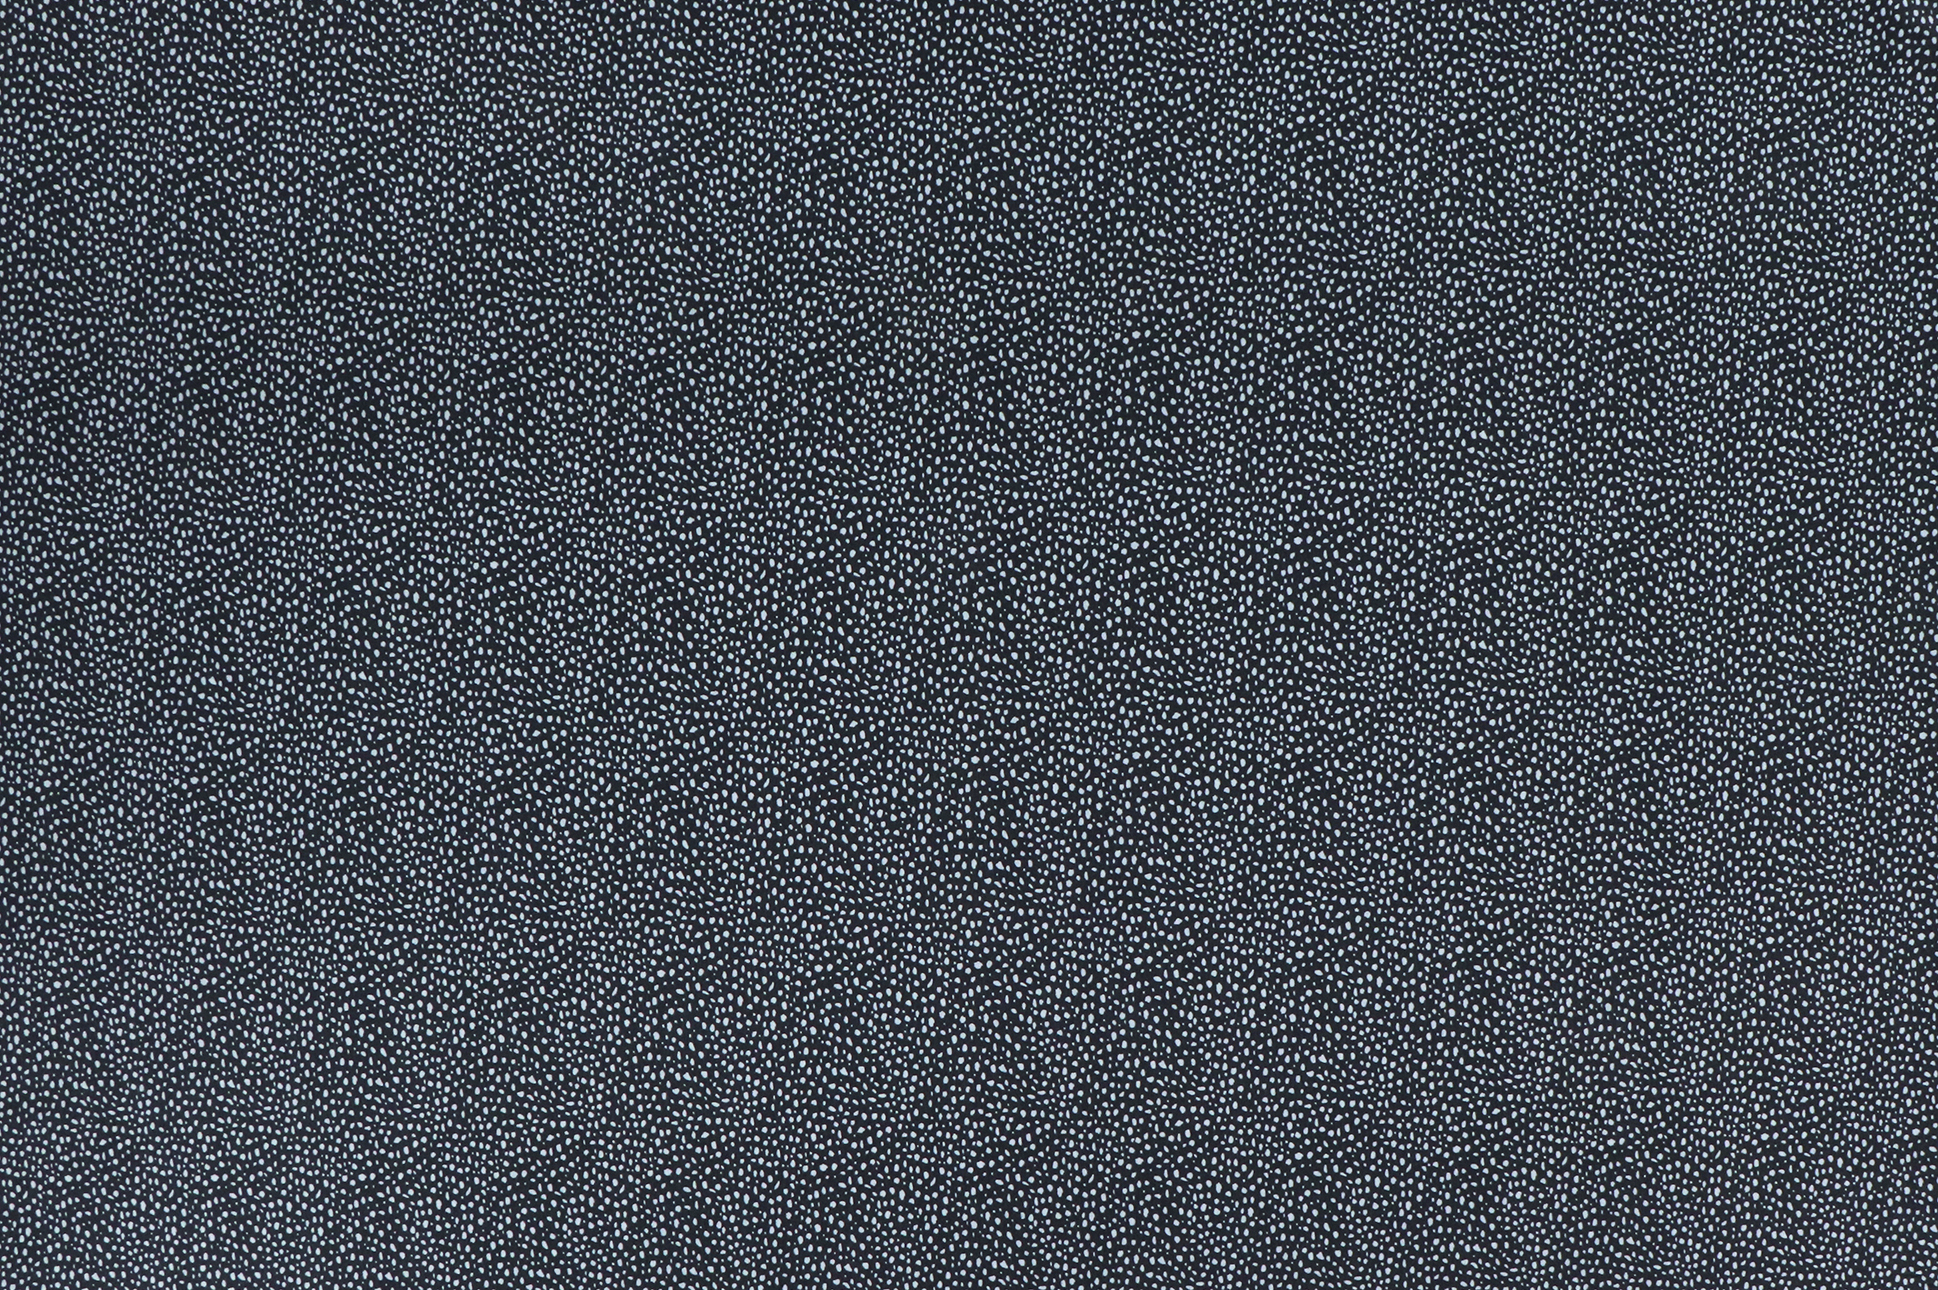 Jersey di cotone, macchie chiare su blu scuro